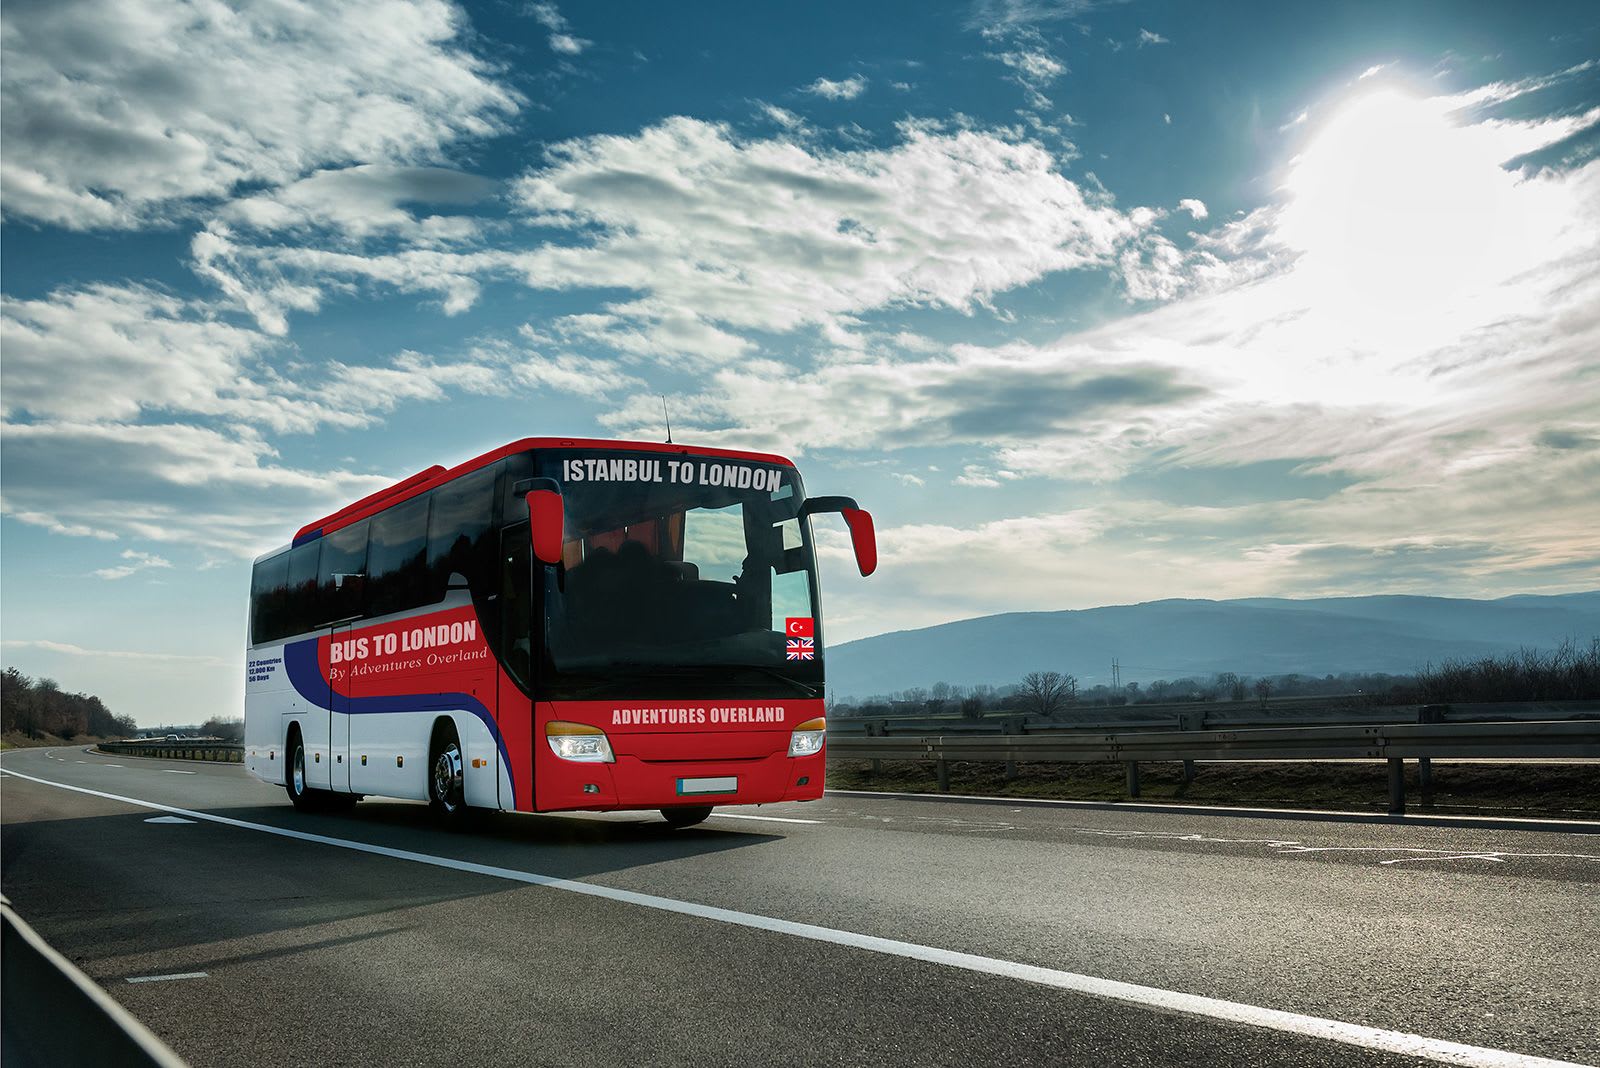 ستعبر أوروبا خلال شهرين.. الرحلة "الأطول في العالم" على متن حافلة تستعد للانطلاق